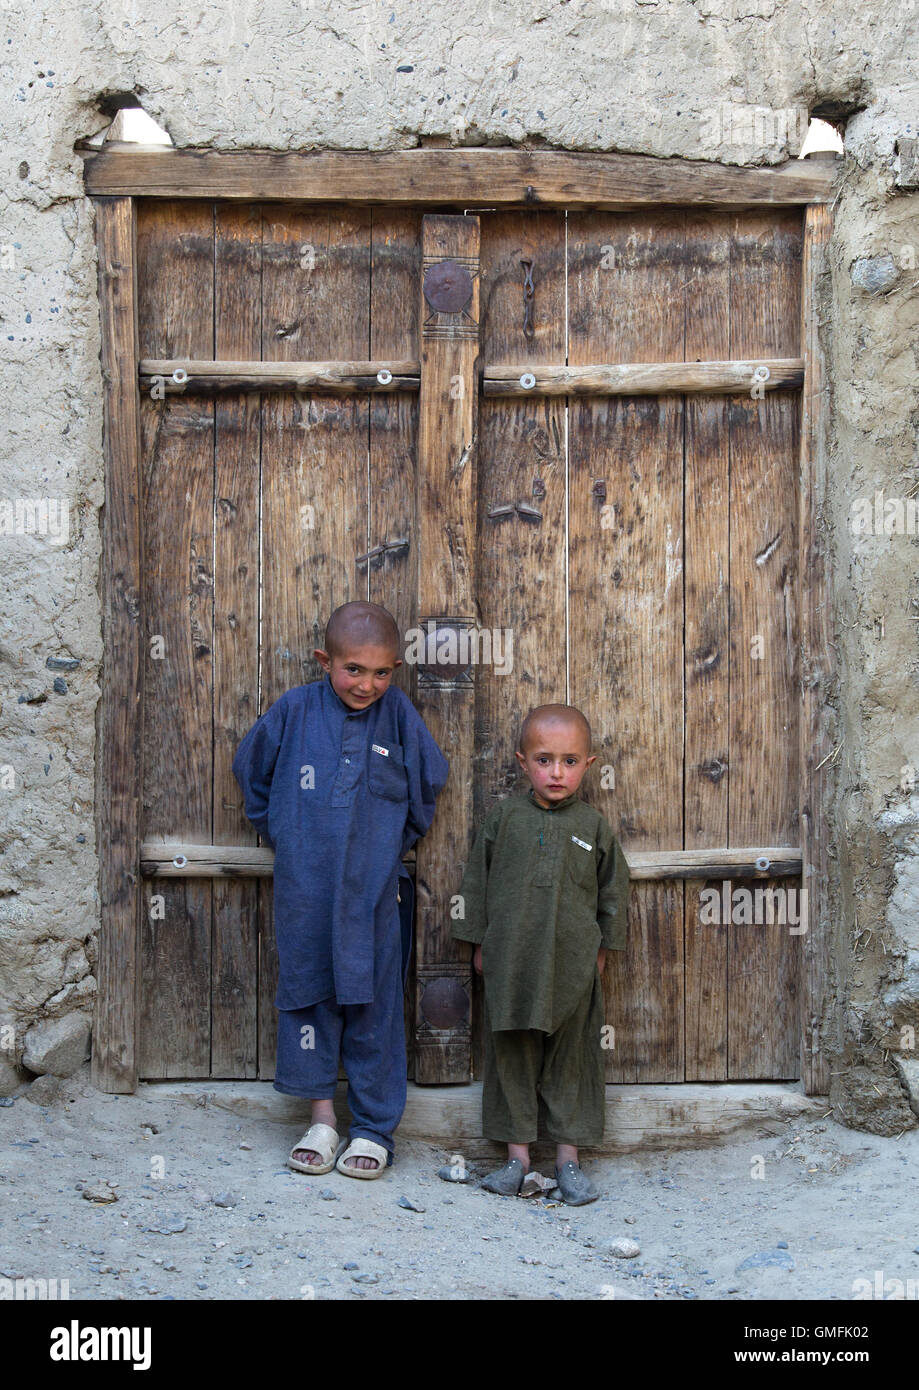 De jeunes Afghans avec le crâne rasé, debout devant une porte en bois, la province de Badakhshan, Afghanistan, Khandood Banque D'Images